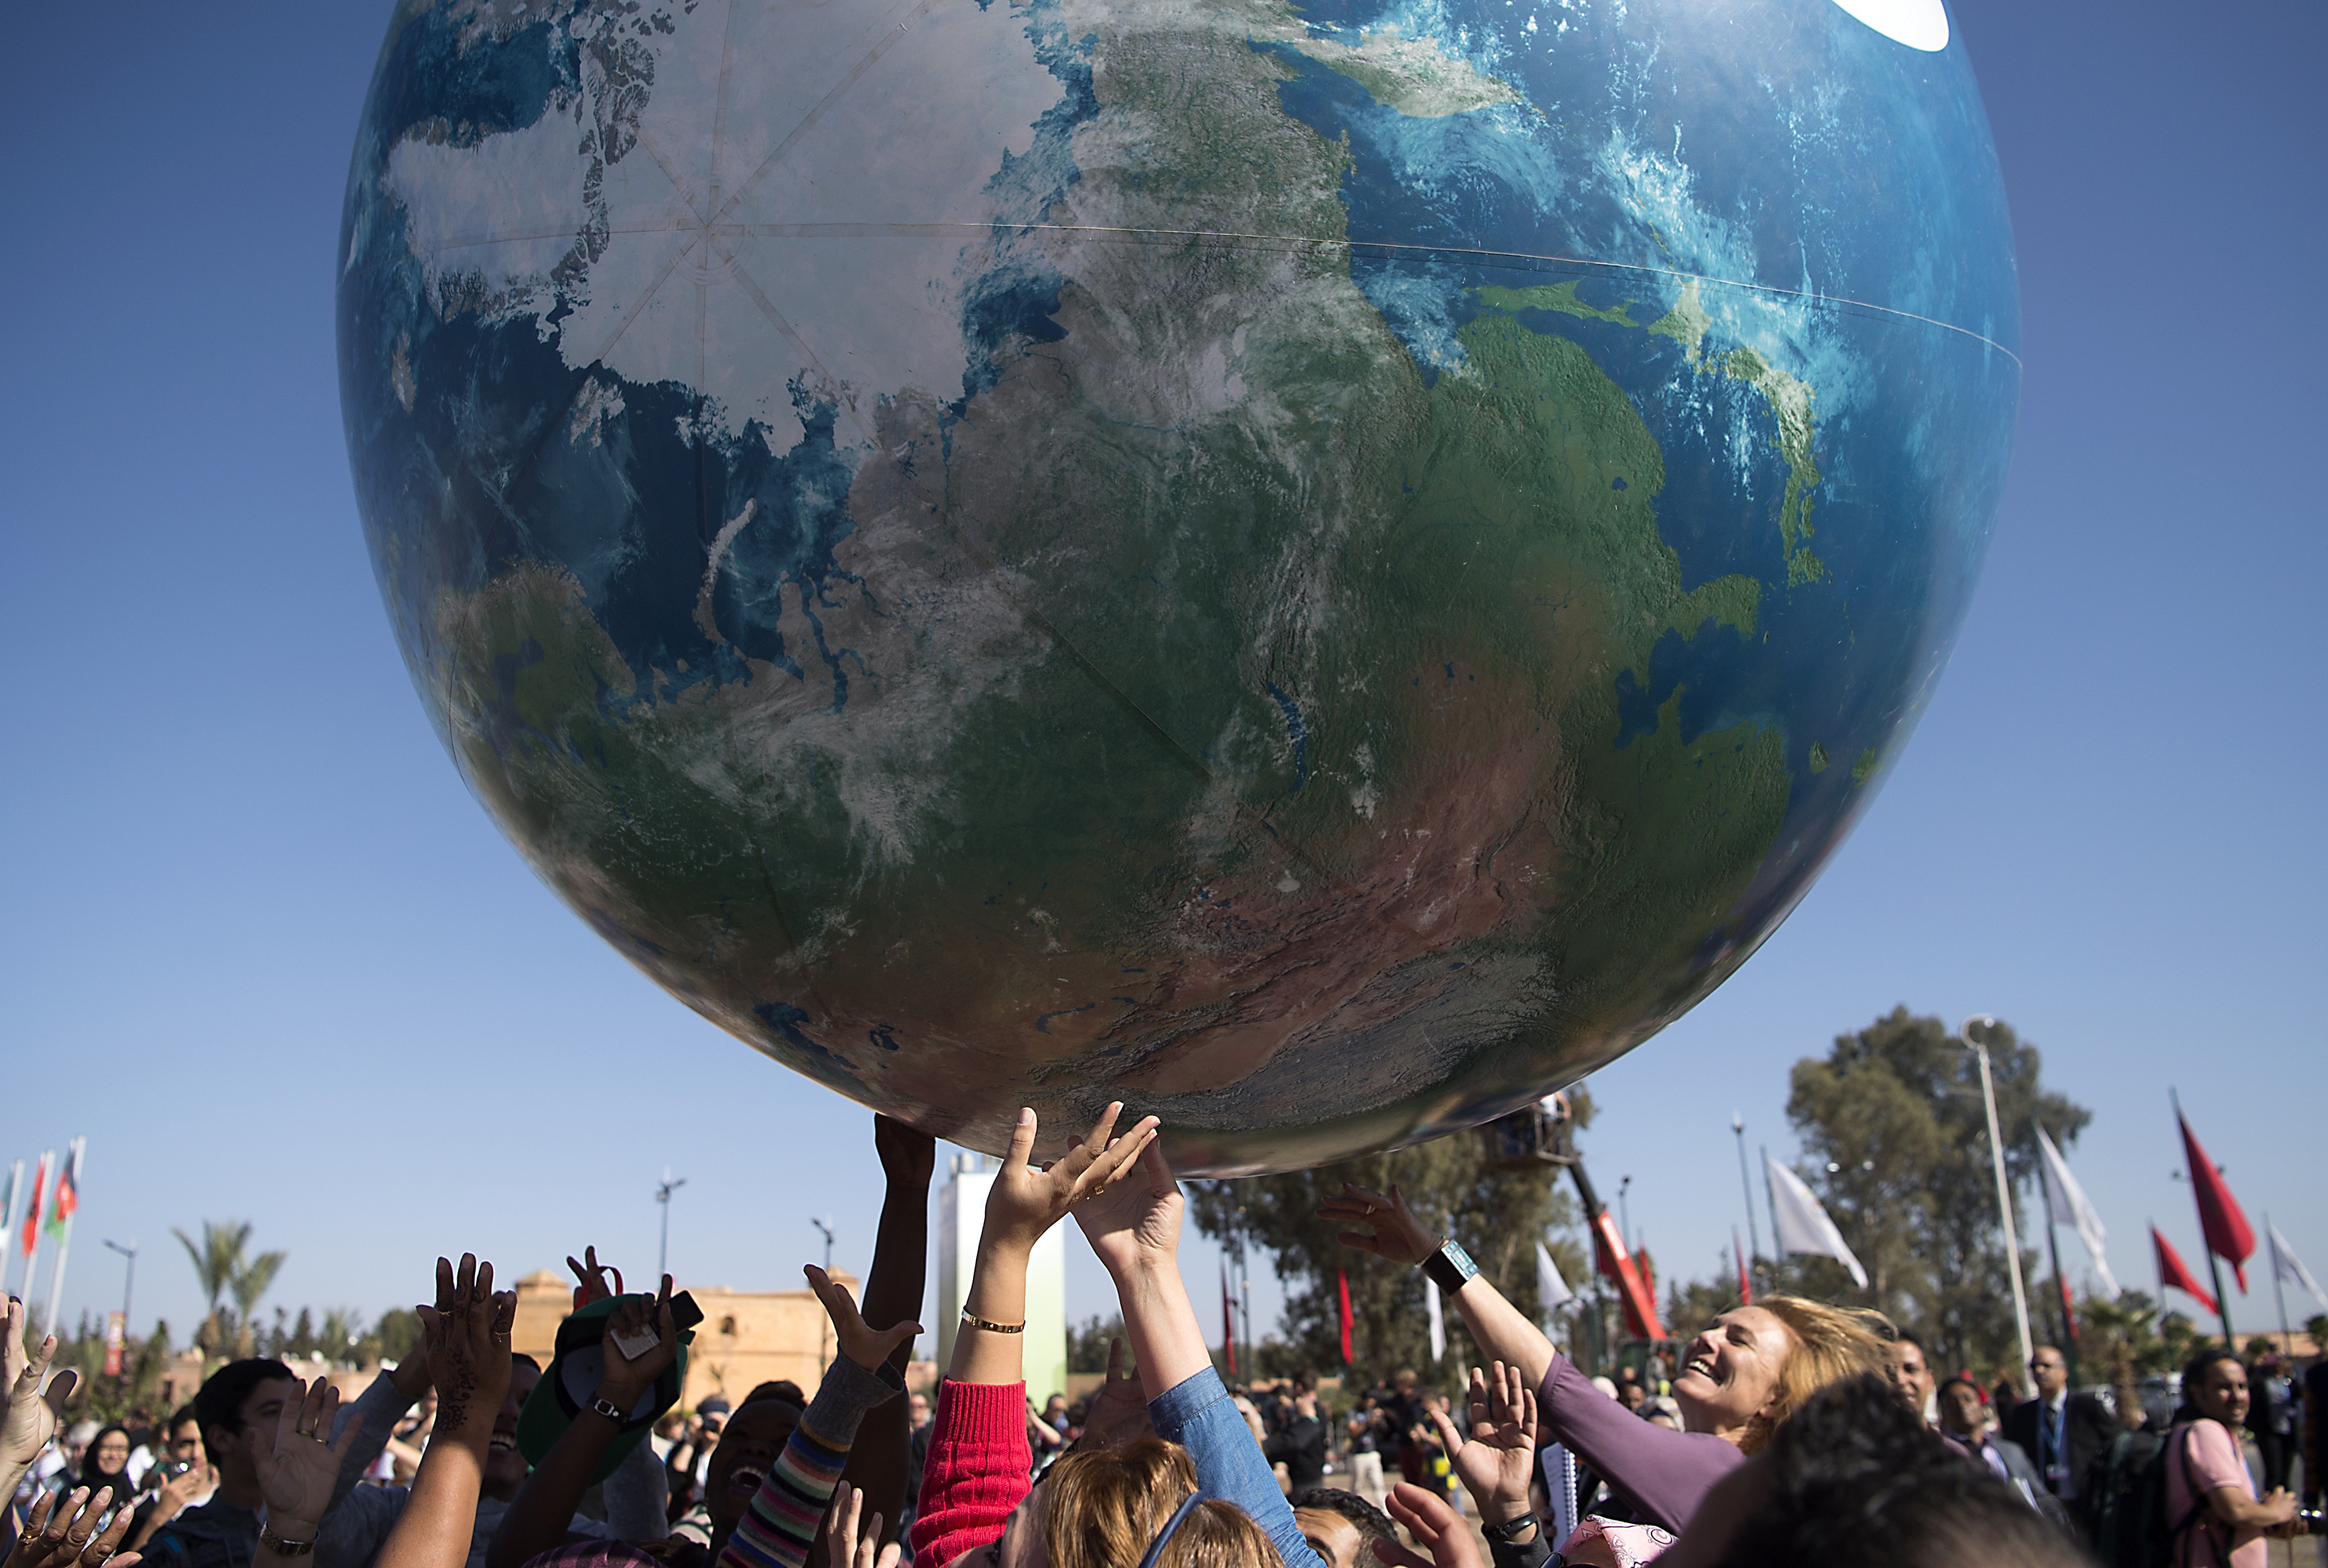 Membros das delegações internacionais brincam com globo gigante nesta sexta-feira (18) fora da COP22, em Marrakesh